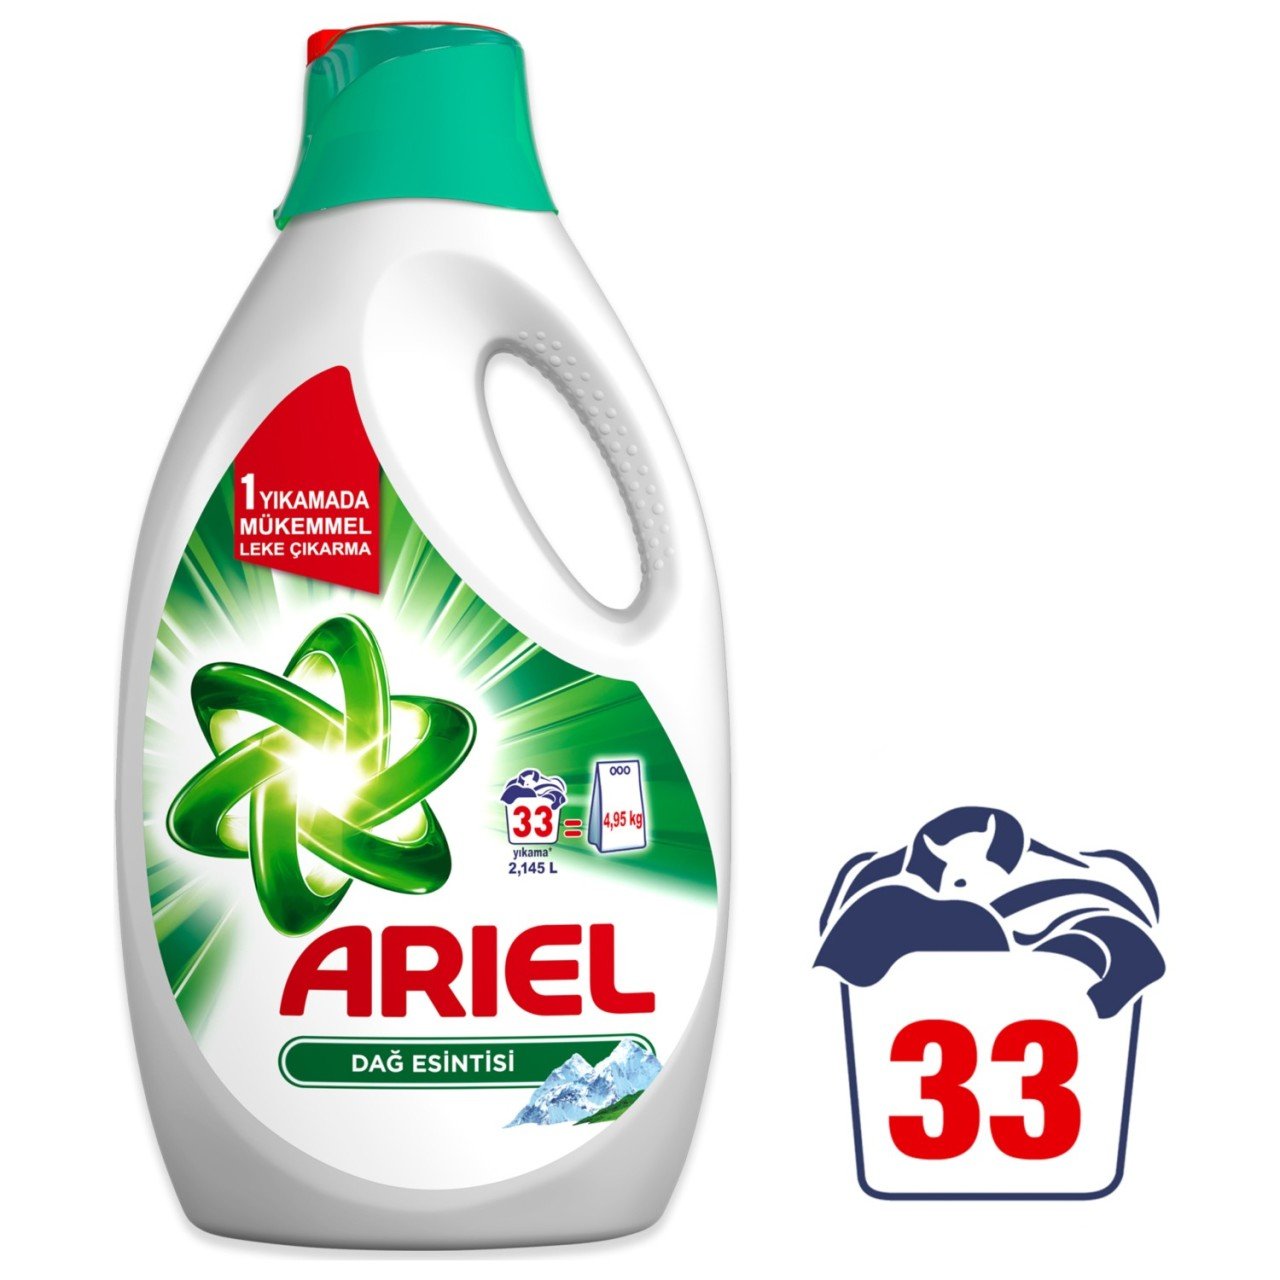 Ariel Sıvı Çamaşır Deterjanı Dağ Esintisi 33 Yıkama Beyazlar ve Renkliler İçin